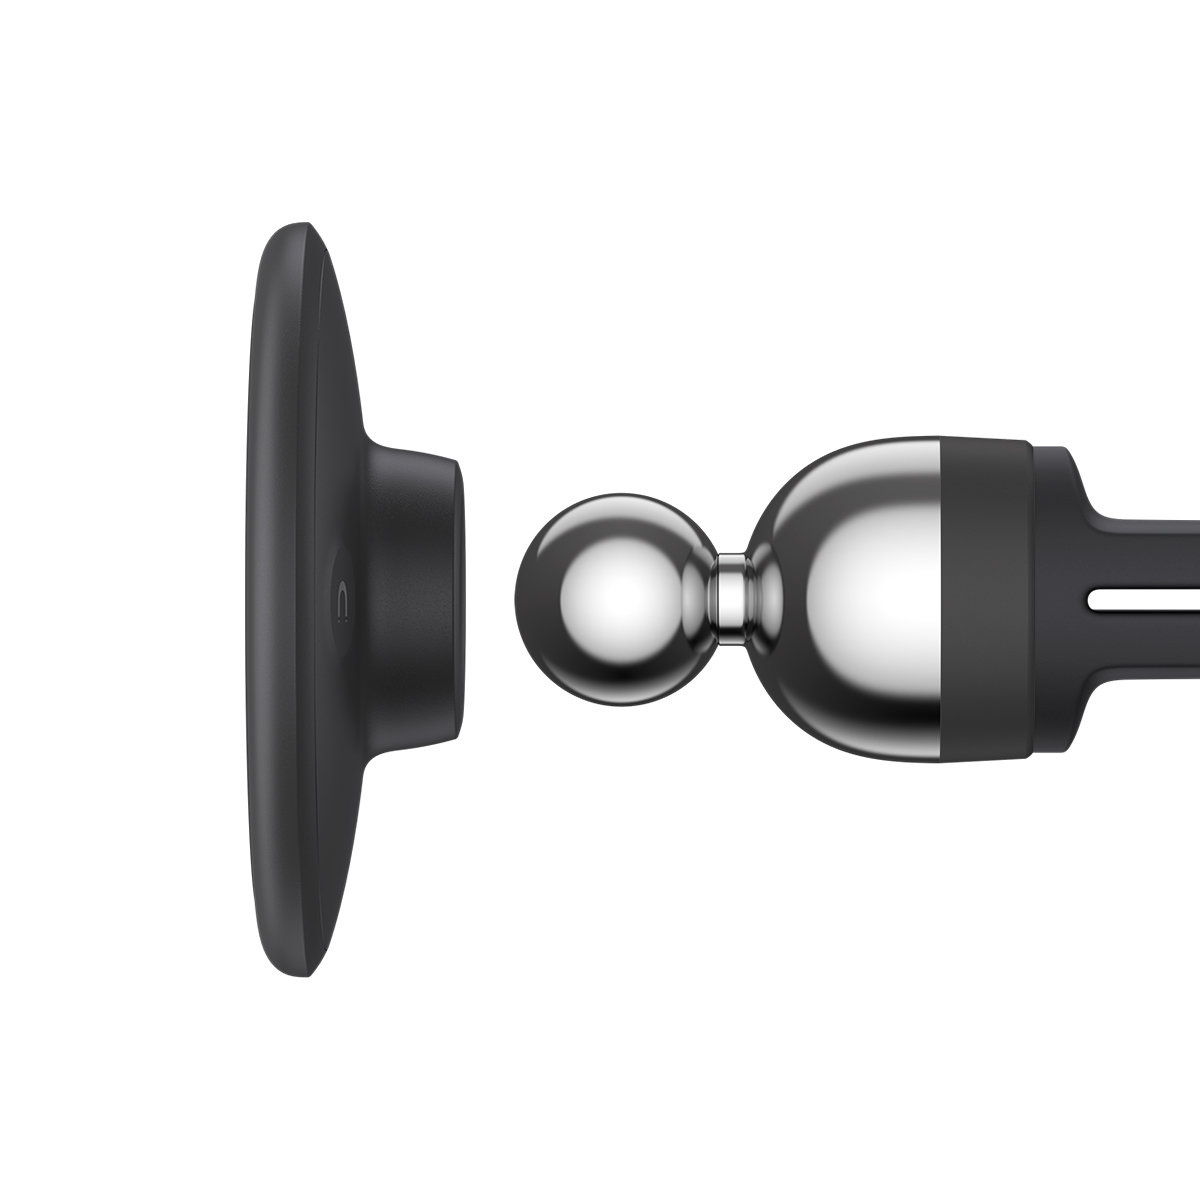 Support Voiture Magnetique pour LeEco Le S3 Aimant Noir Ventilateur  Universel 360 Rotatif - Accessoire téléphonie pour voiture - Achat & prix